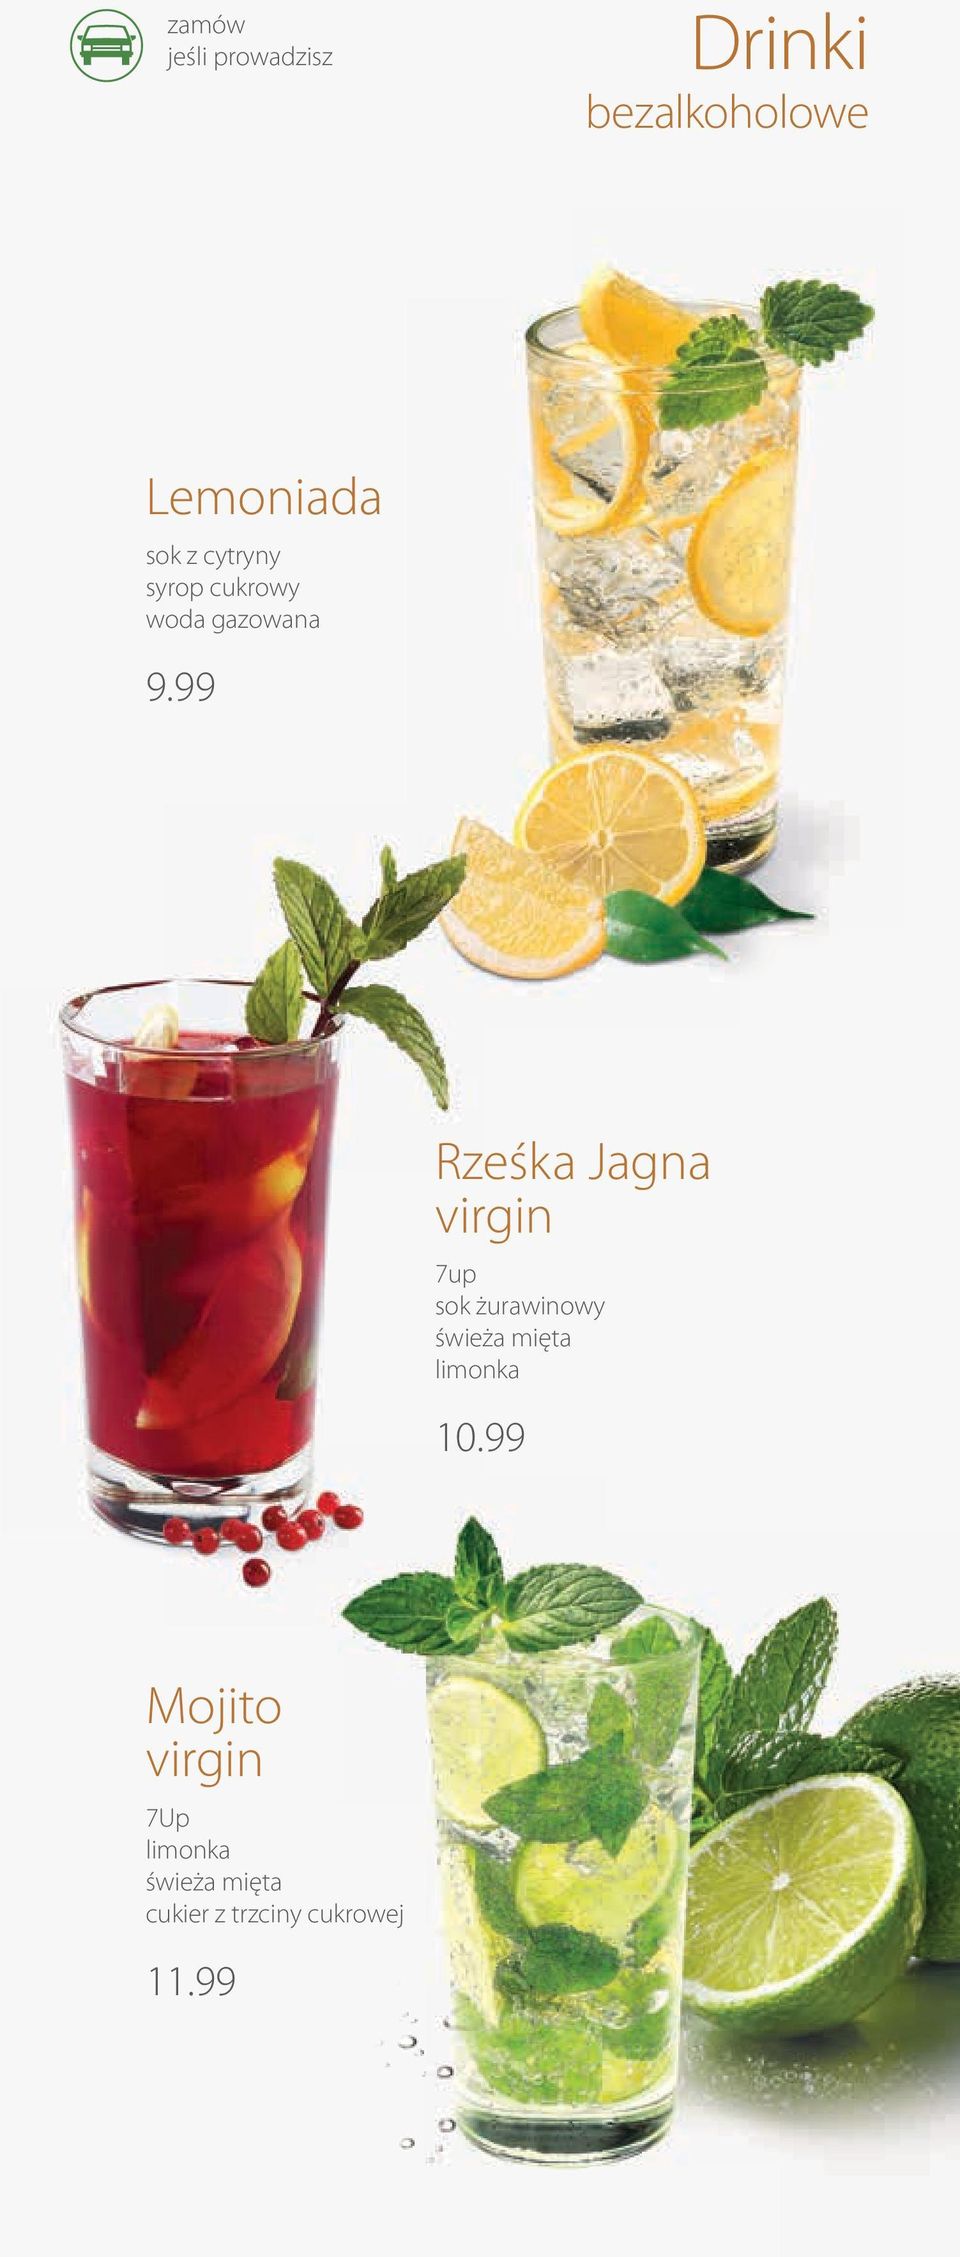 99 Rześka Jagna virgin 7up sok żurawinowy świeża mięta